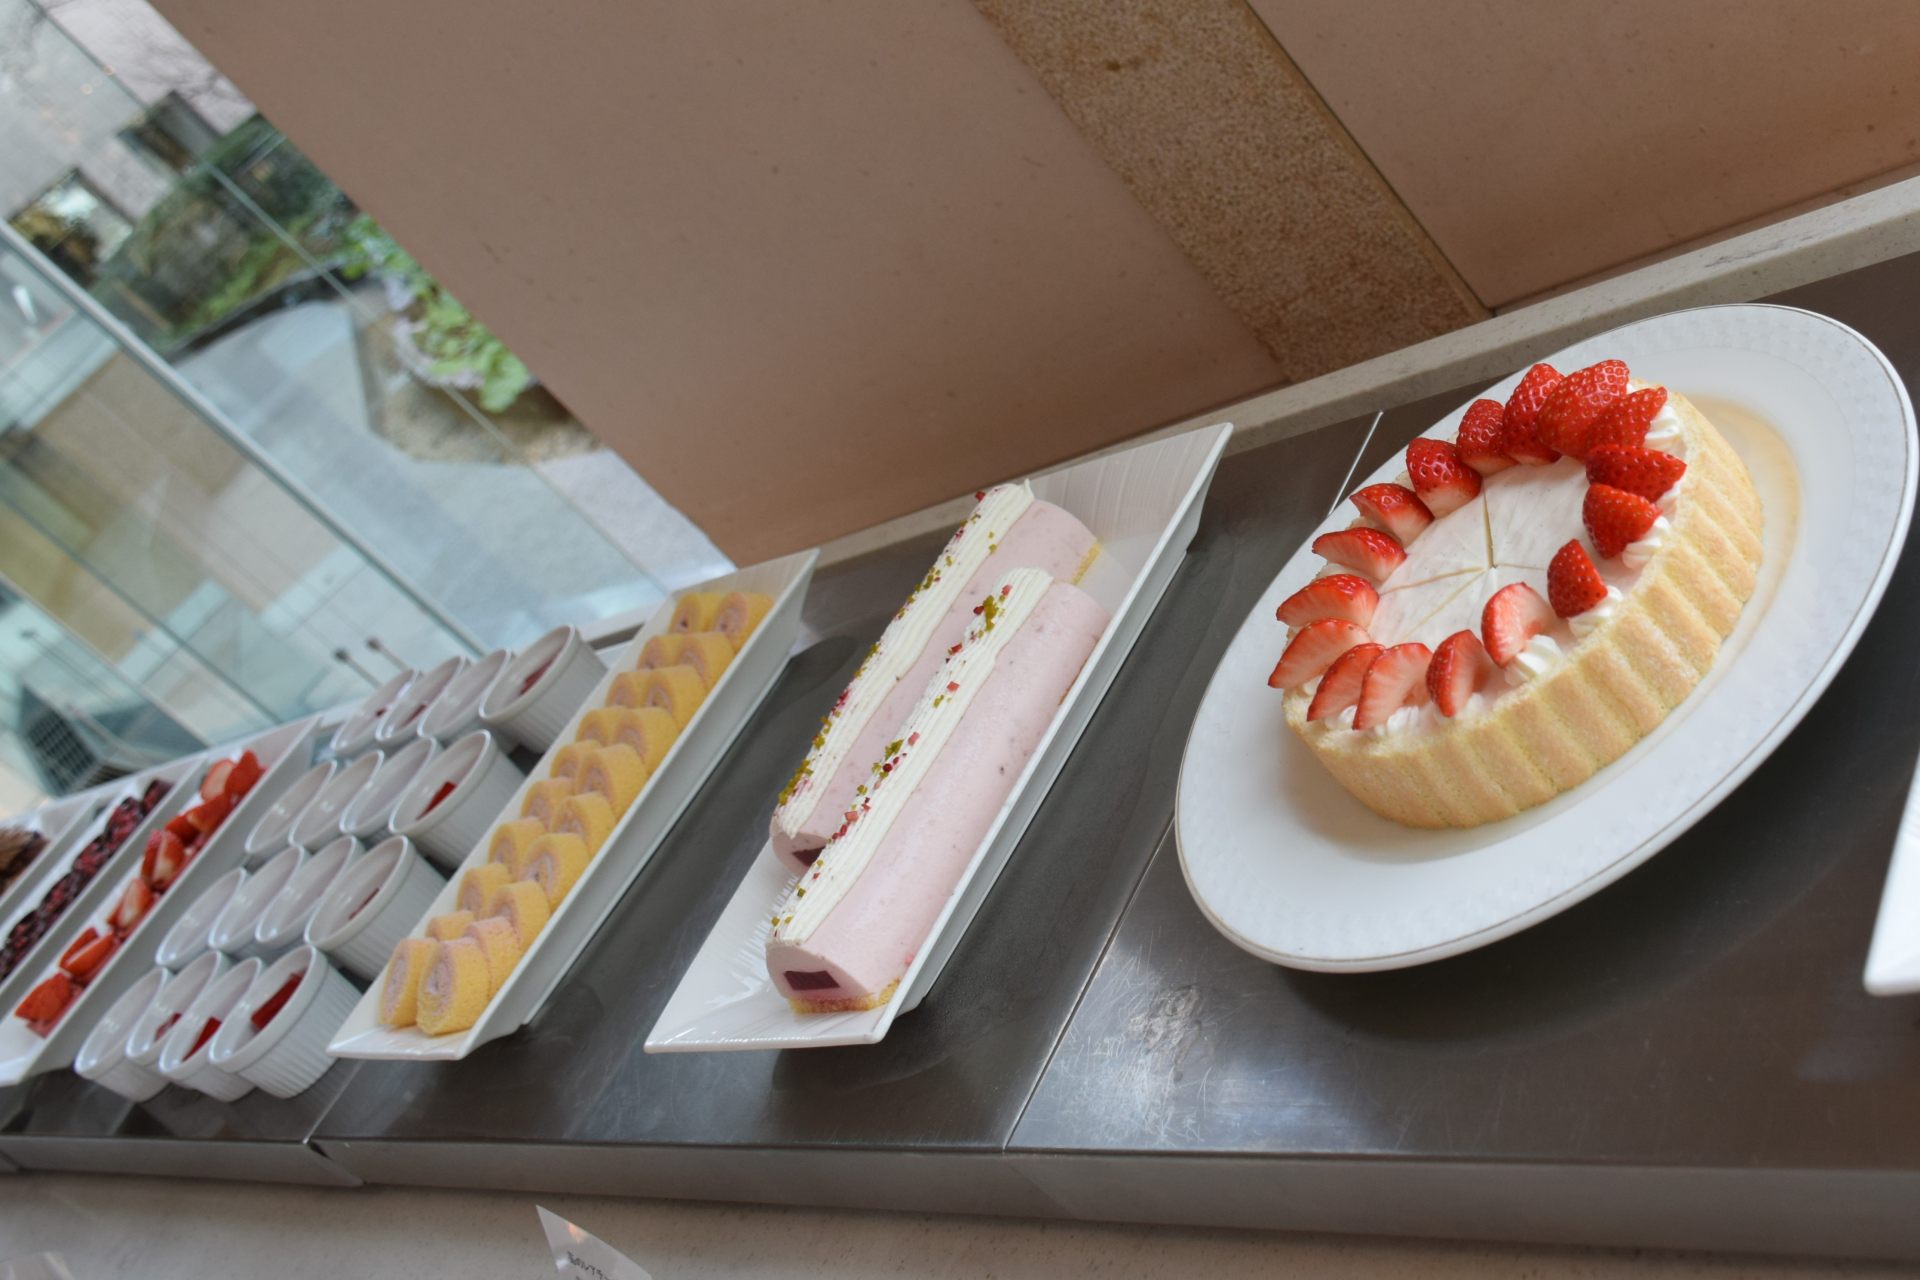 右から、シャルロットバニラ、苺のレアチーズケーキ、苺クリームのロールケーキ